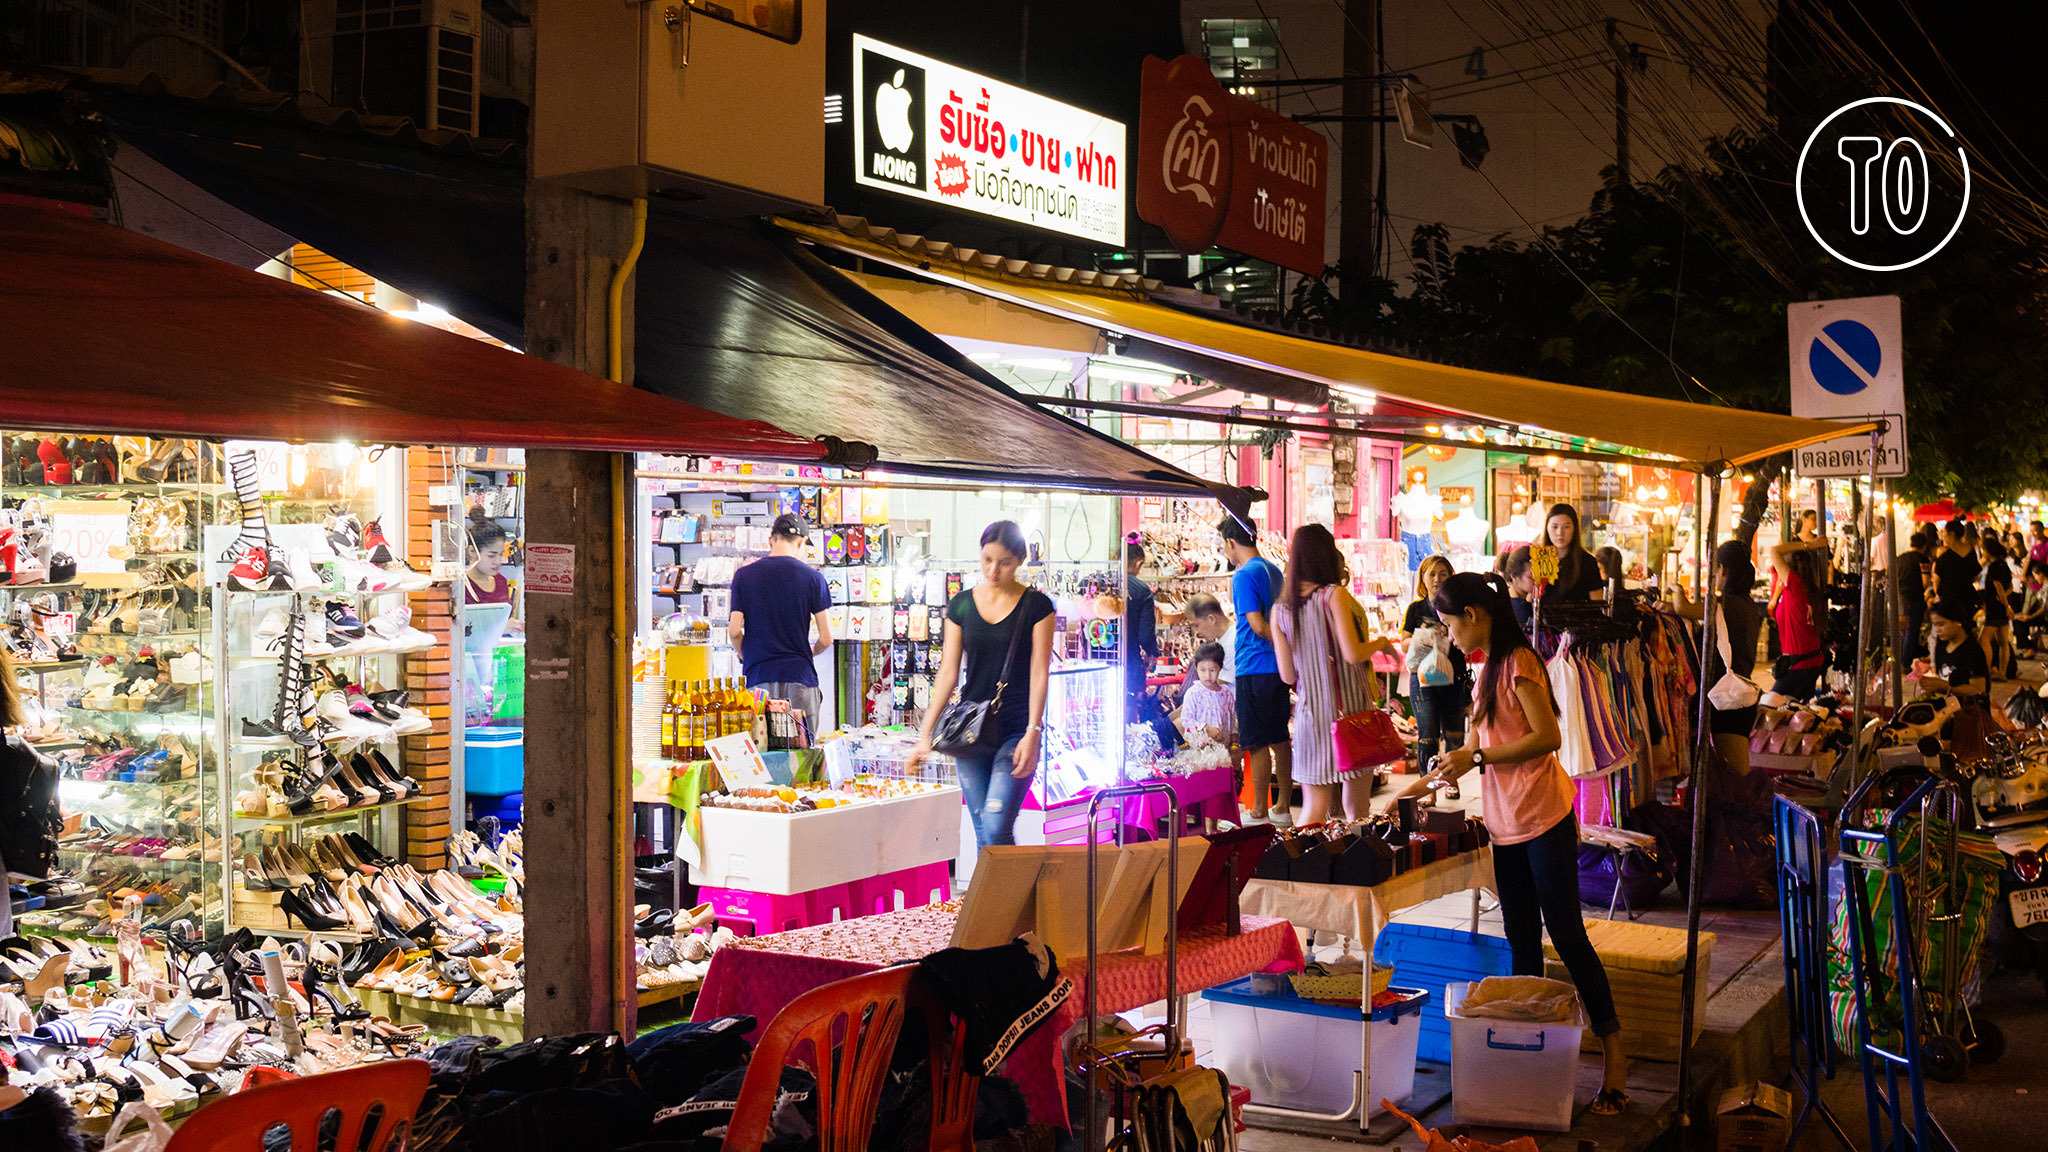 Underwear shop at Chatuchak weekend market, Bangkok, Thailand